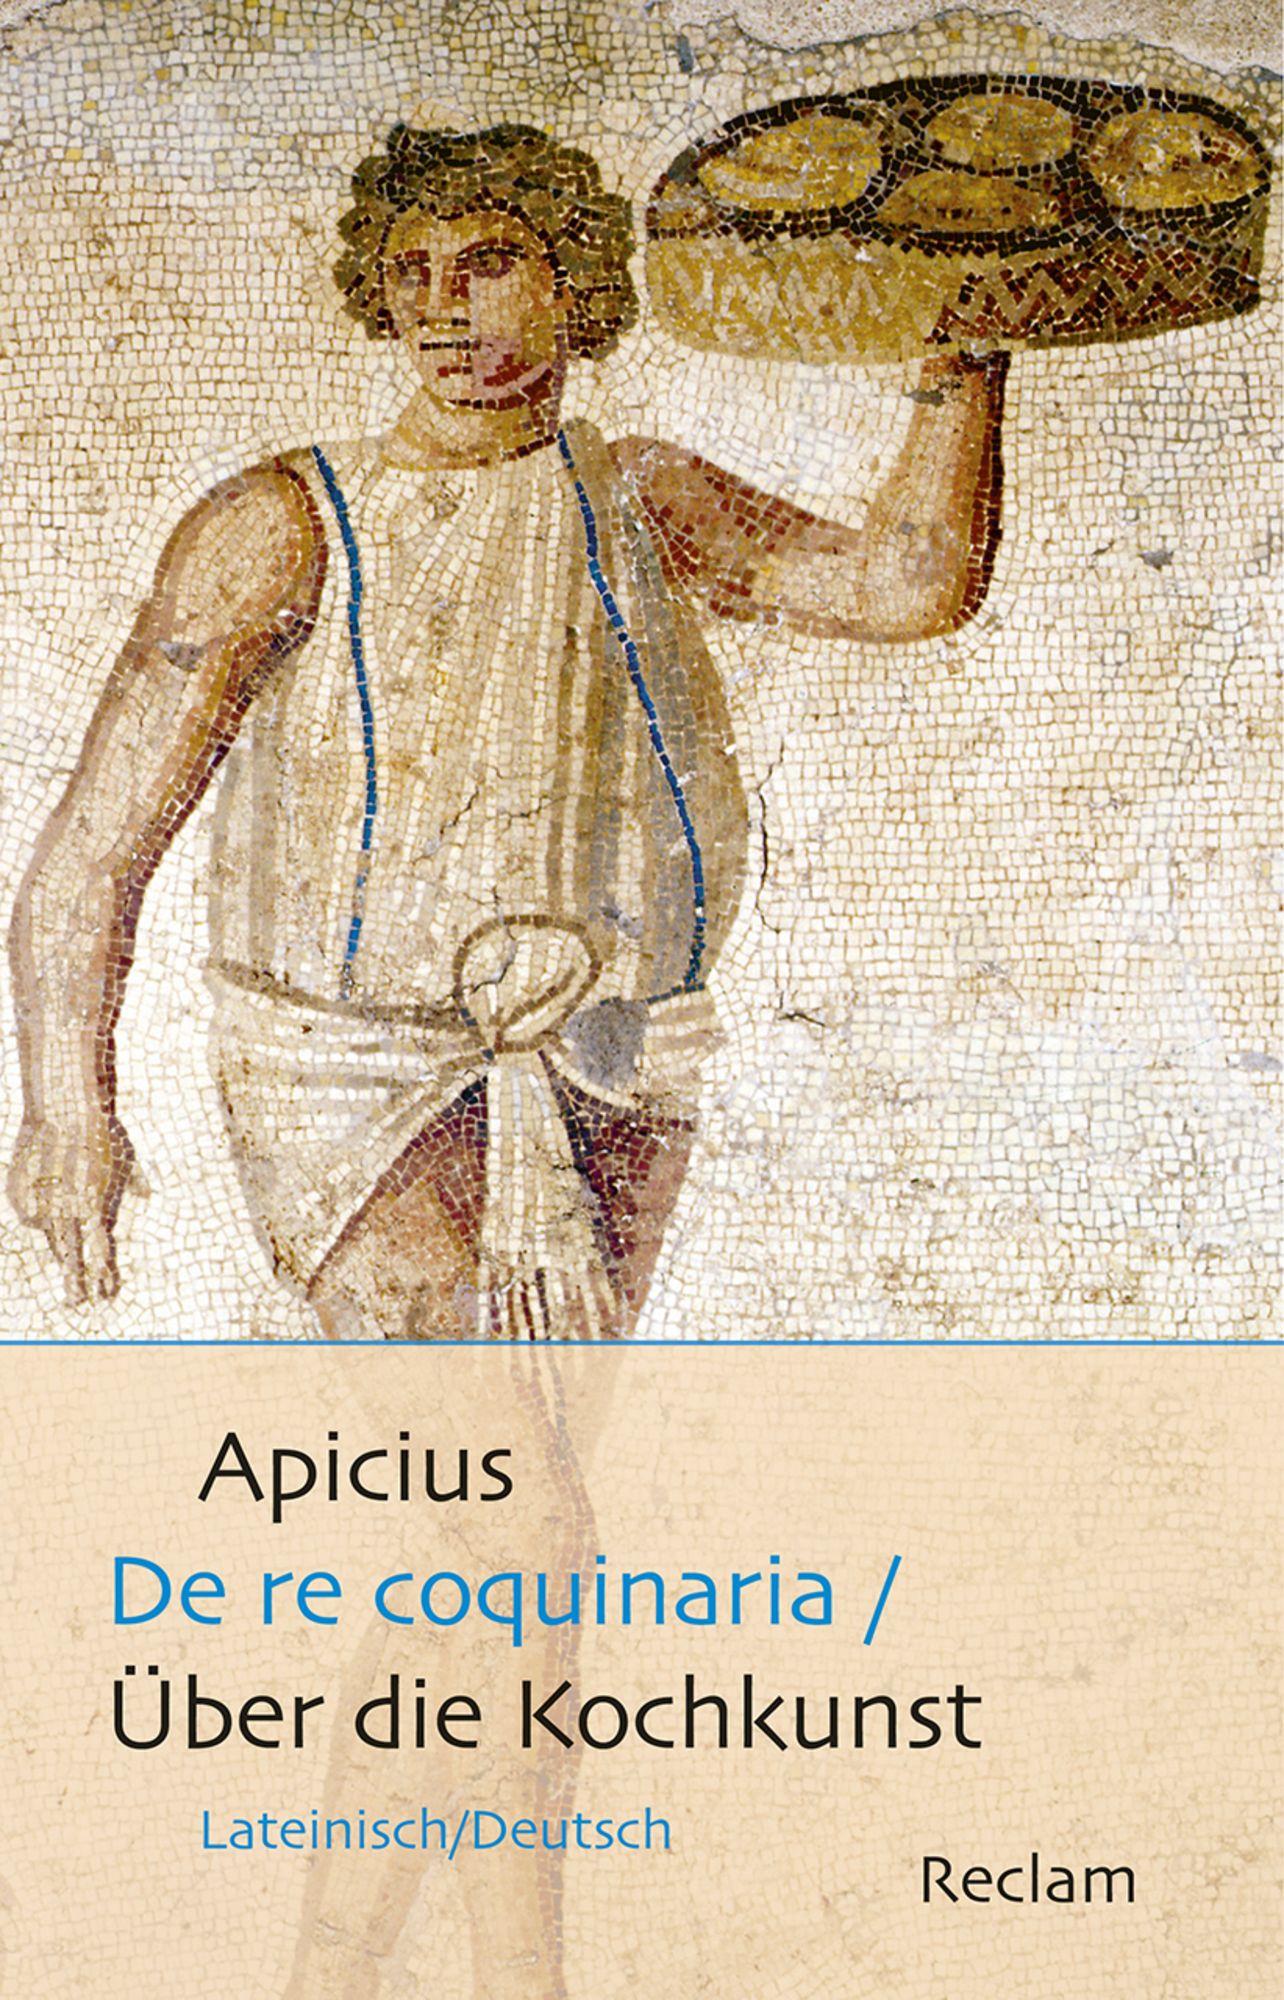 De re coquinaria, Apicius